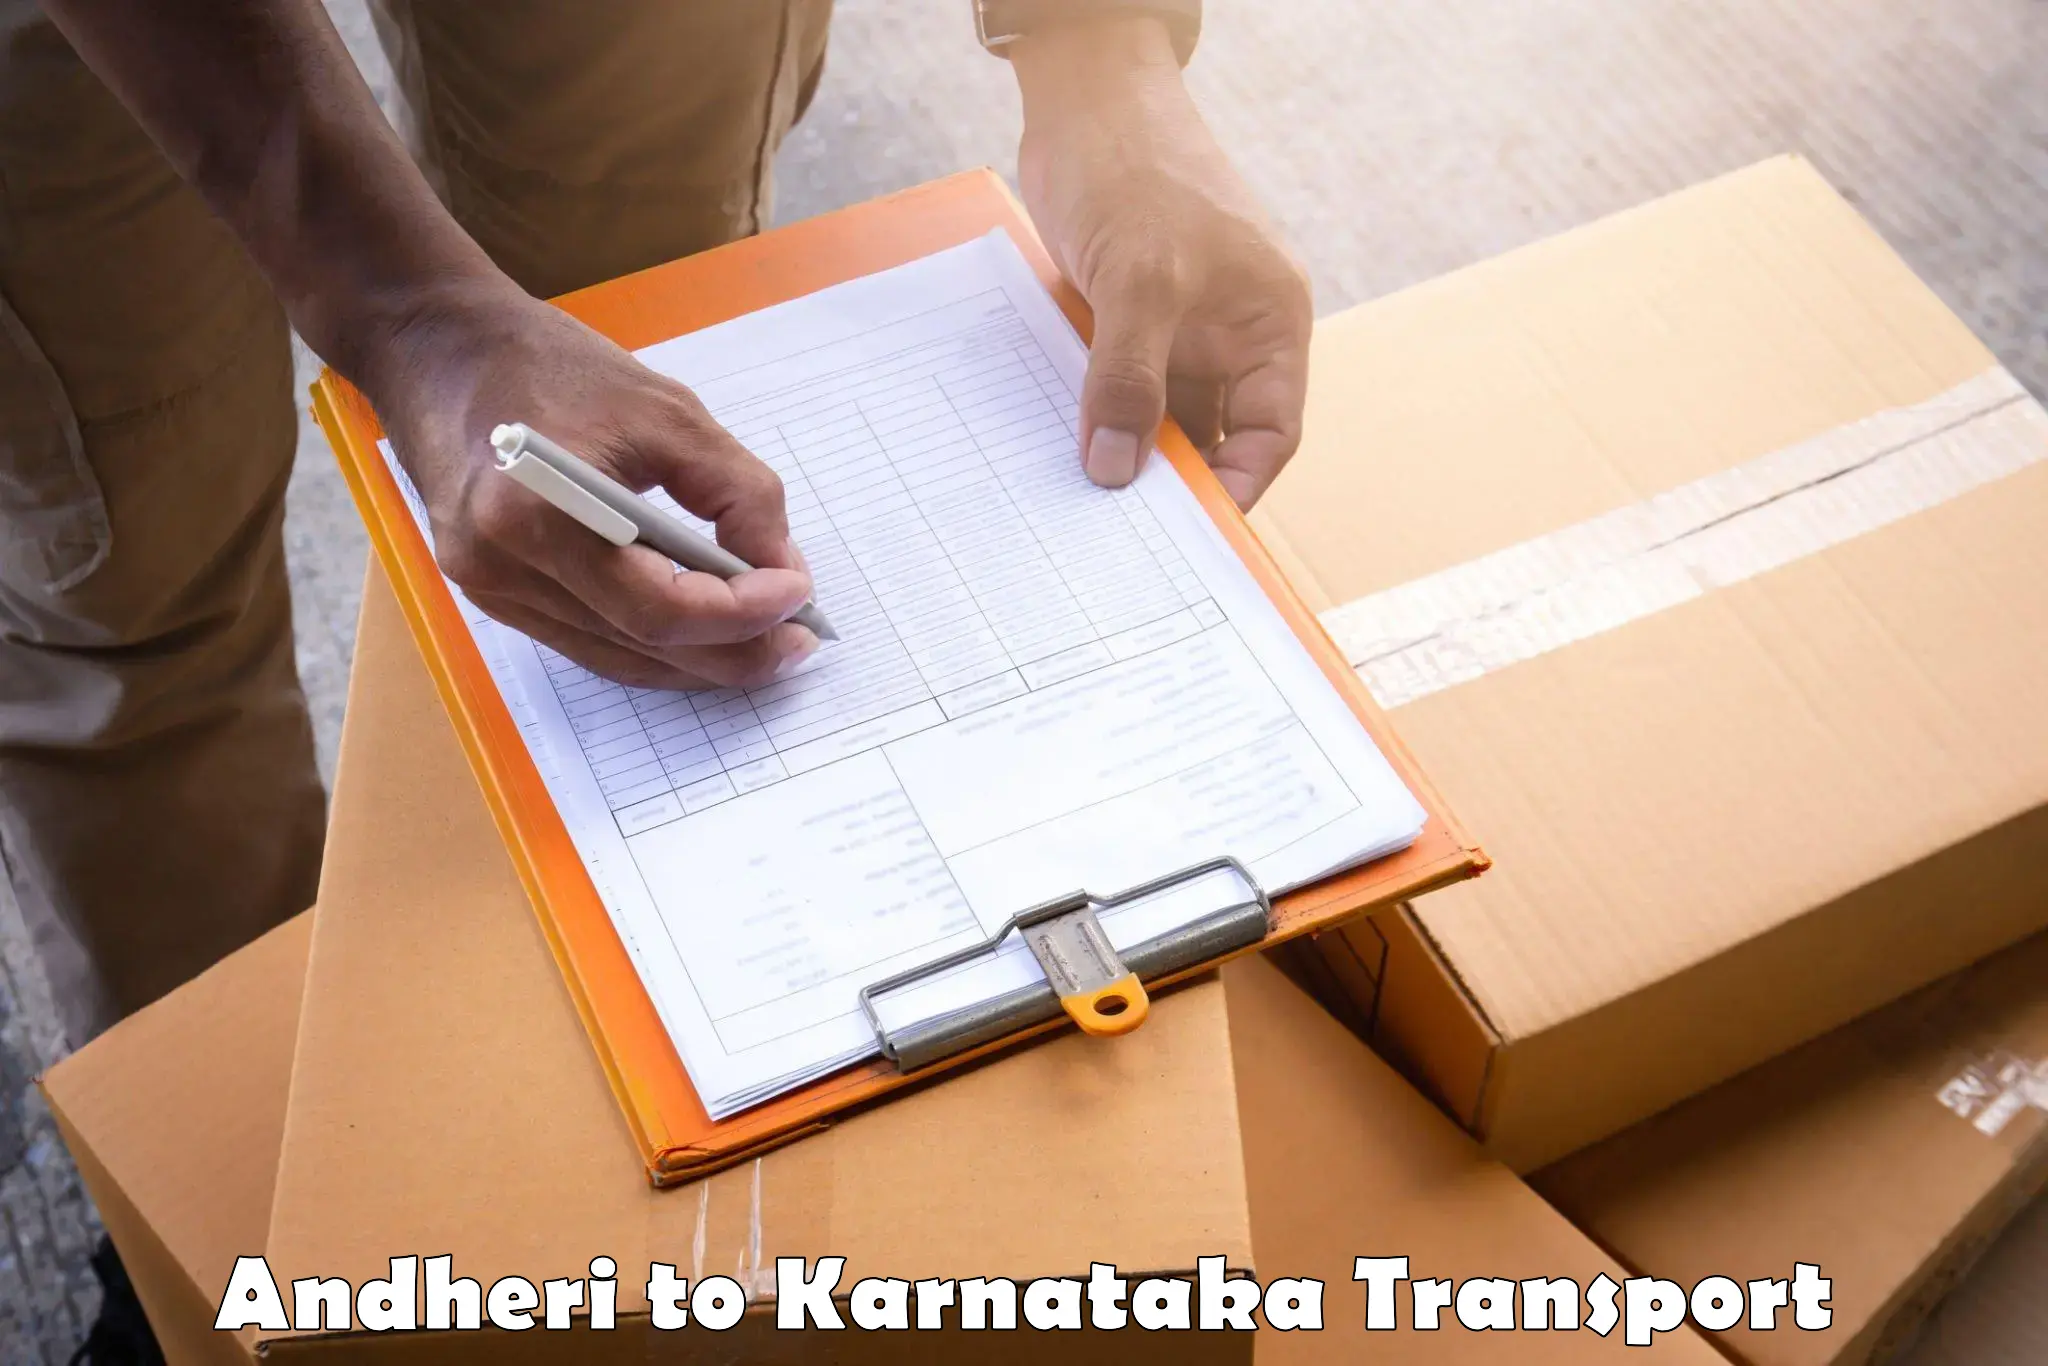 Furniture transport service in Andheri to Panja Dakshin Kannad